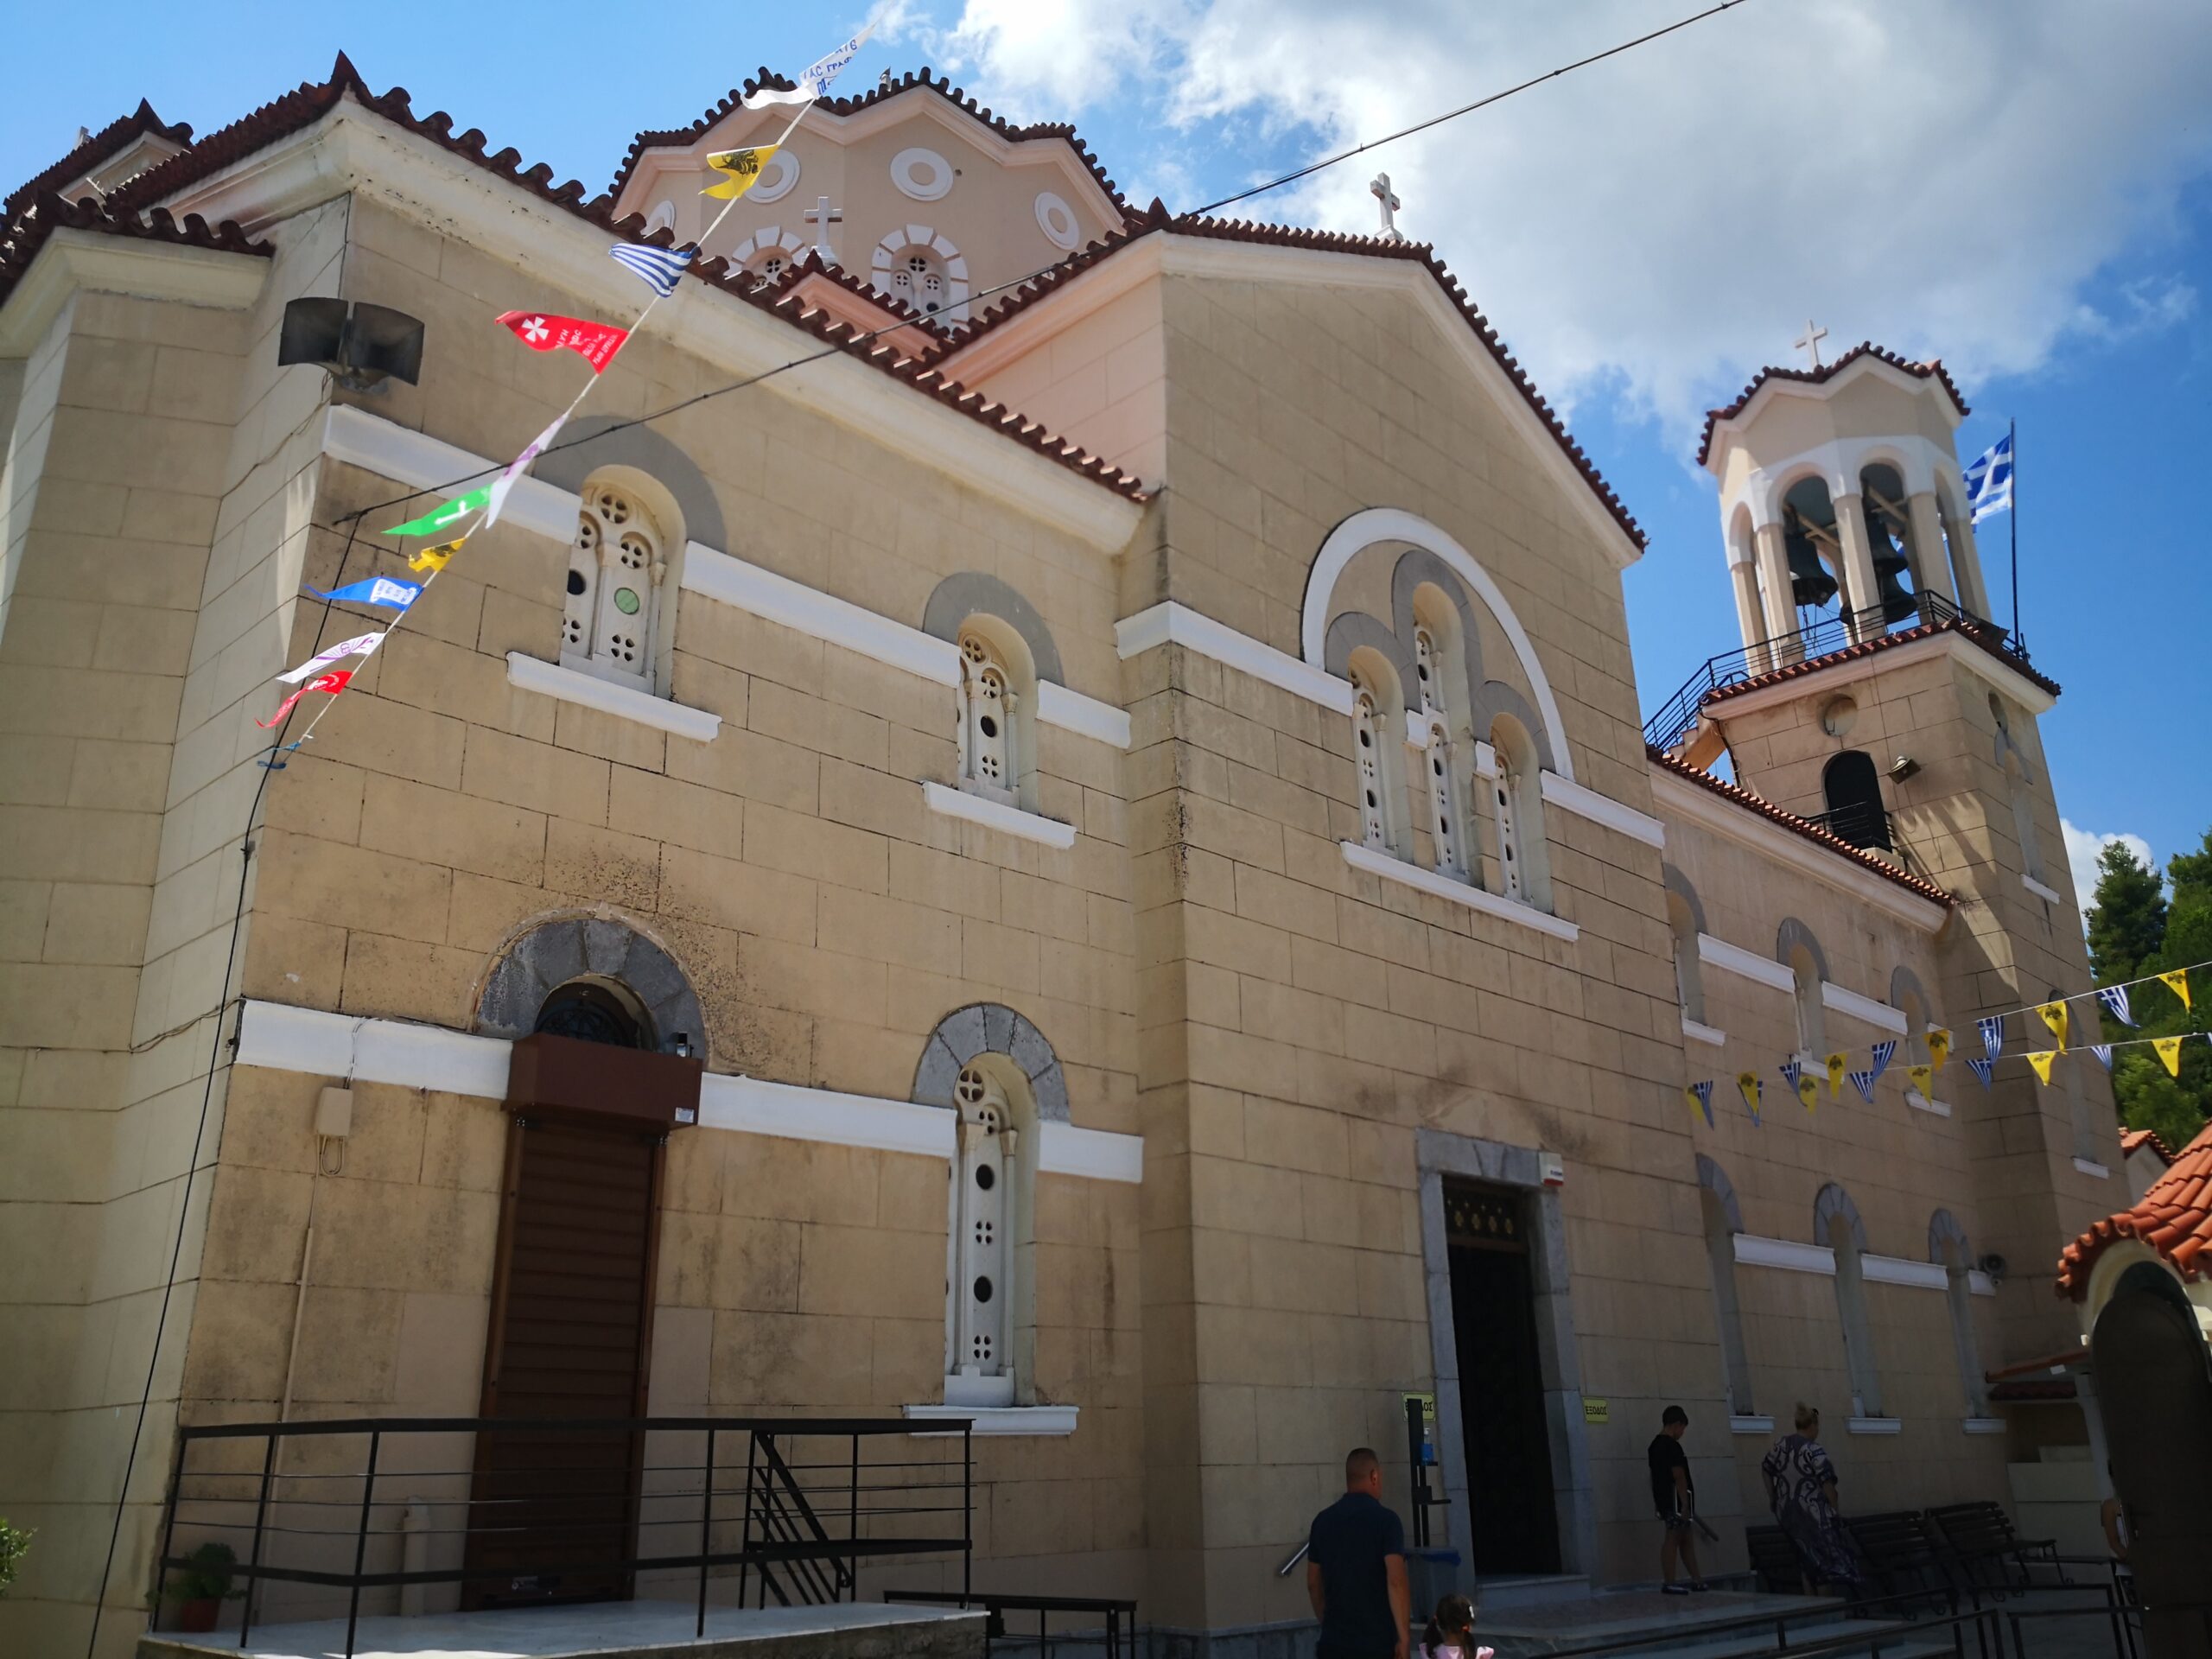 Επισκέπτες από όλη την Ελλάδα και γειτονικές χώρες στον Ιερό Ναό του Οσίου Ιωάννου του Ρώσου στο Νέο Προκόπιο της Εύβοιας